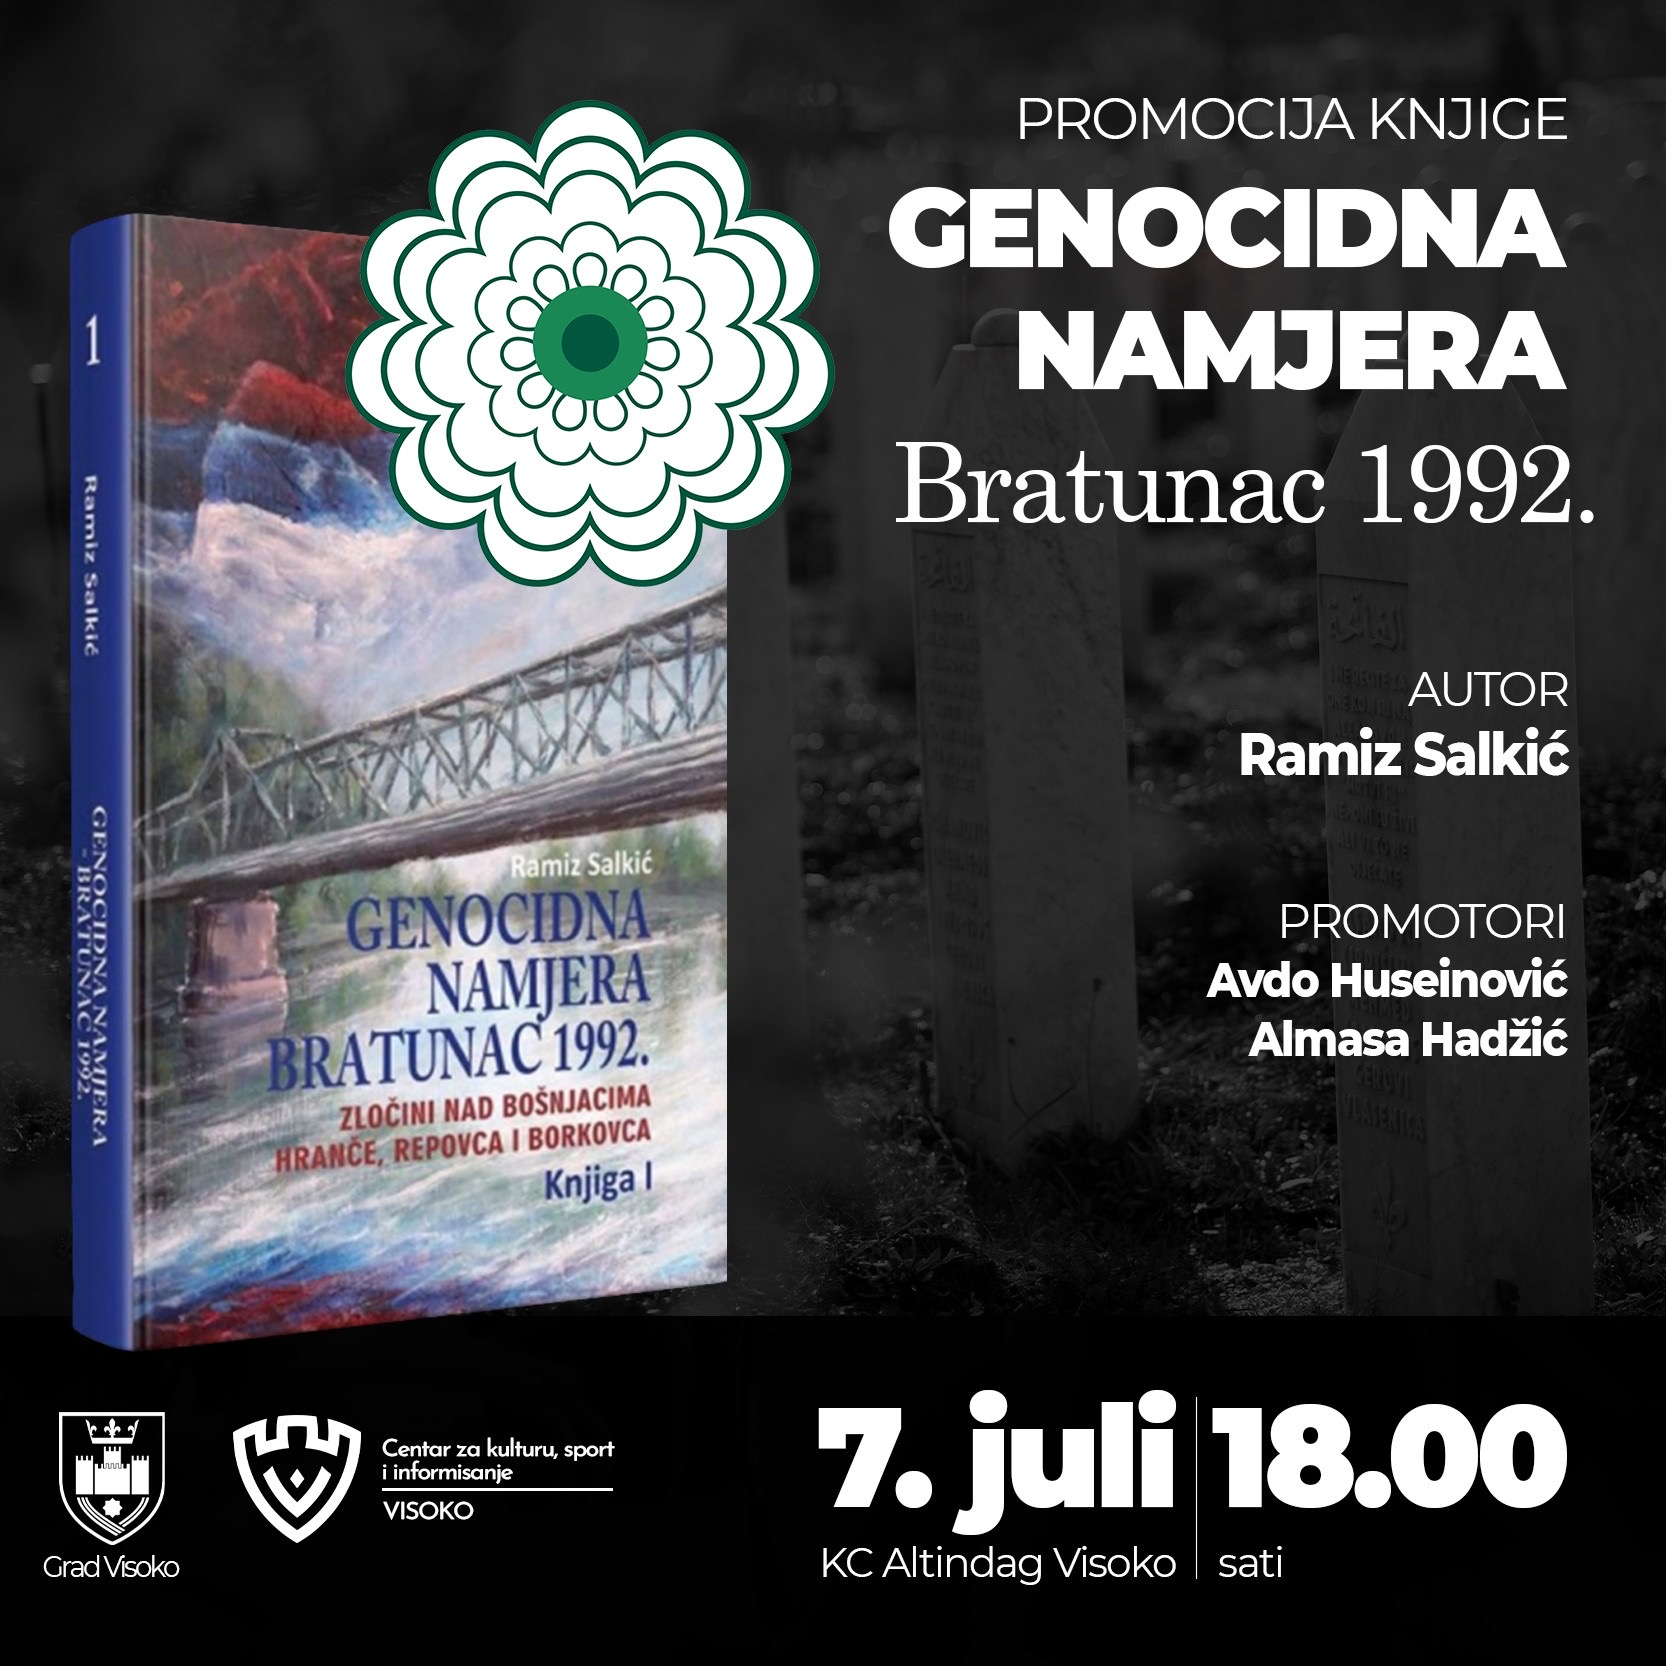 Promocija knjige “Genocidna namjera Bratunac 1992.”